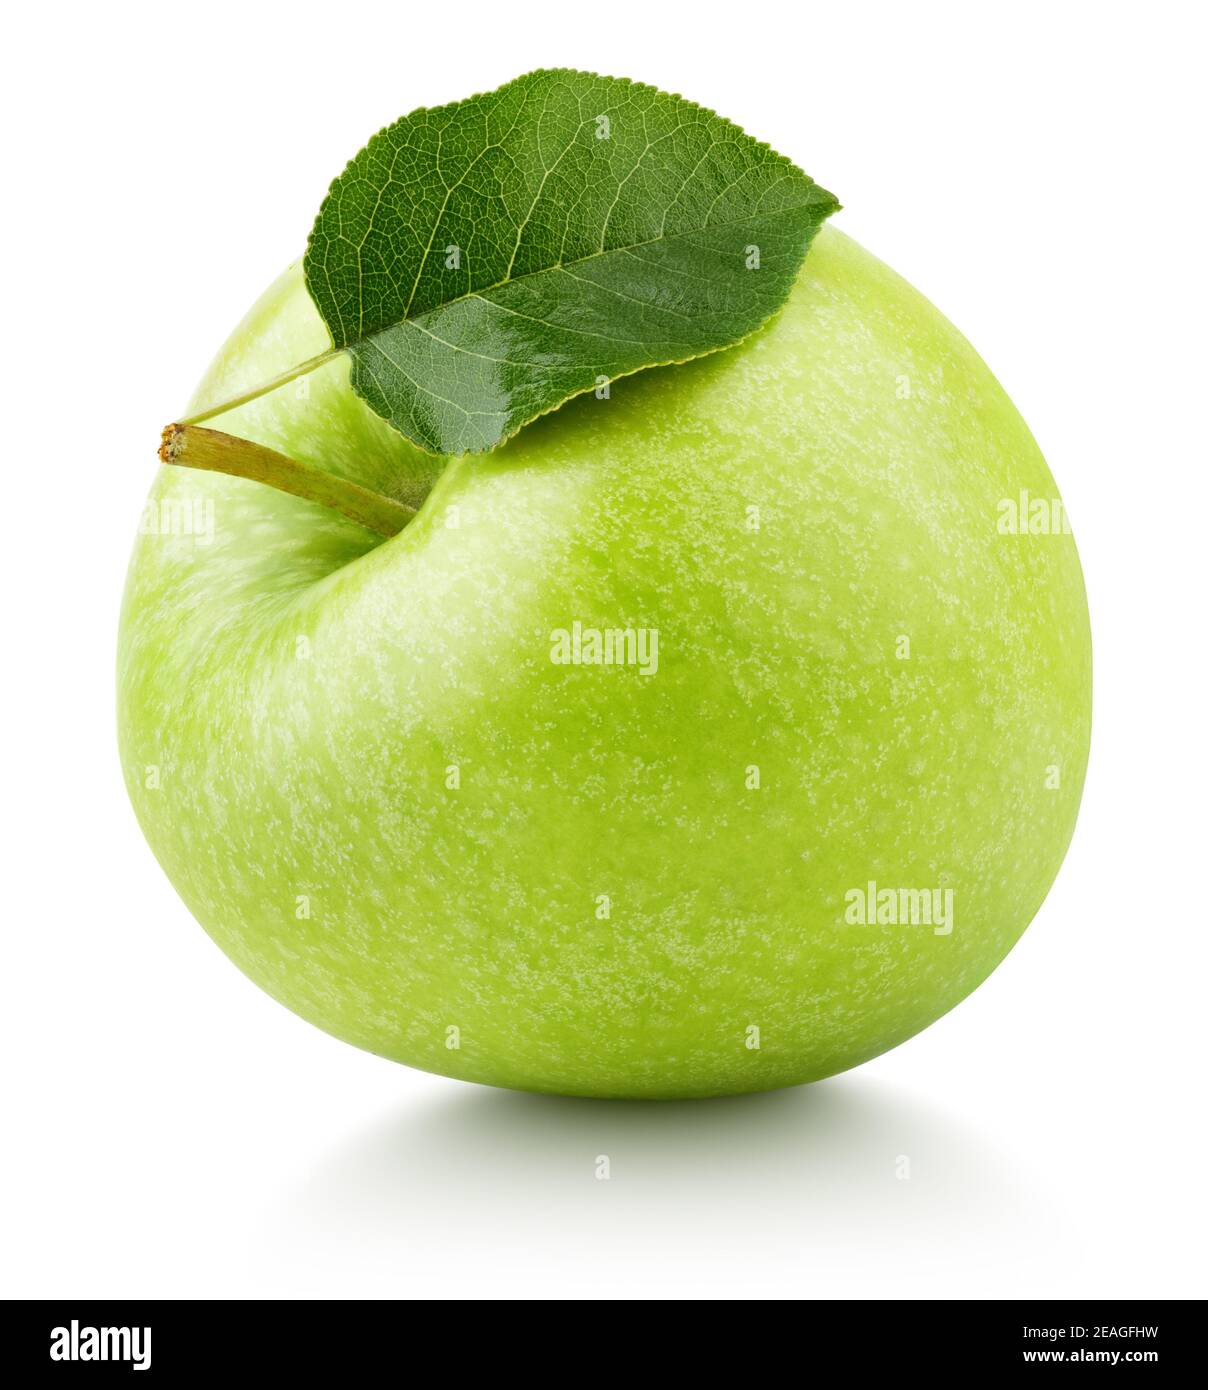 Una mela verde matura con foglia verde isolata su sfondo bianco. Mela Granny smith con percorso di ritaglio Foto Stock